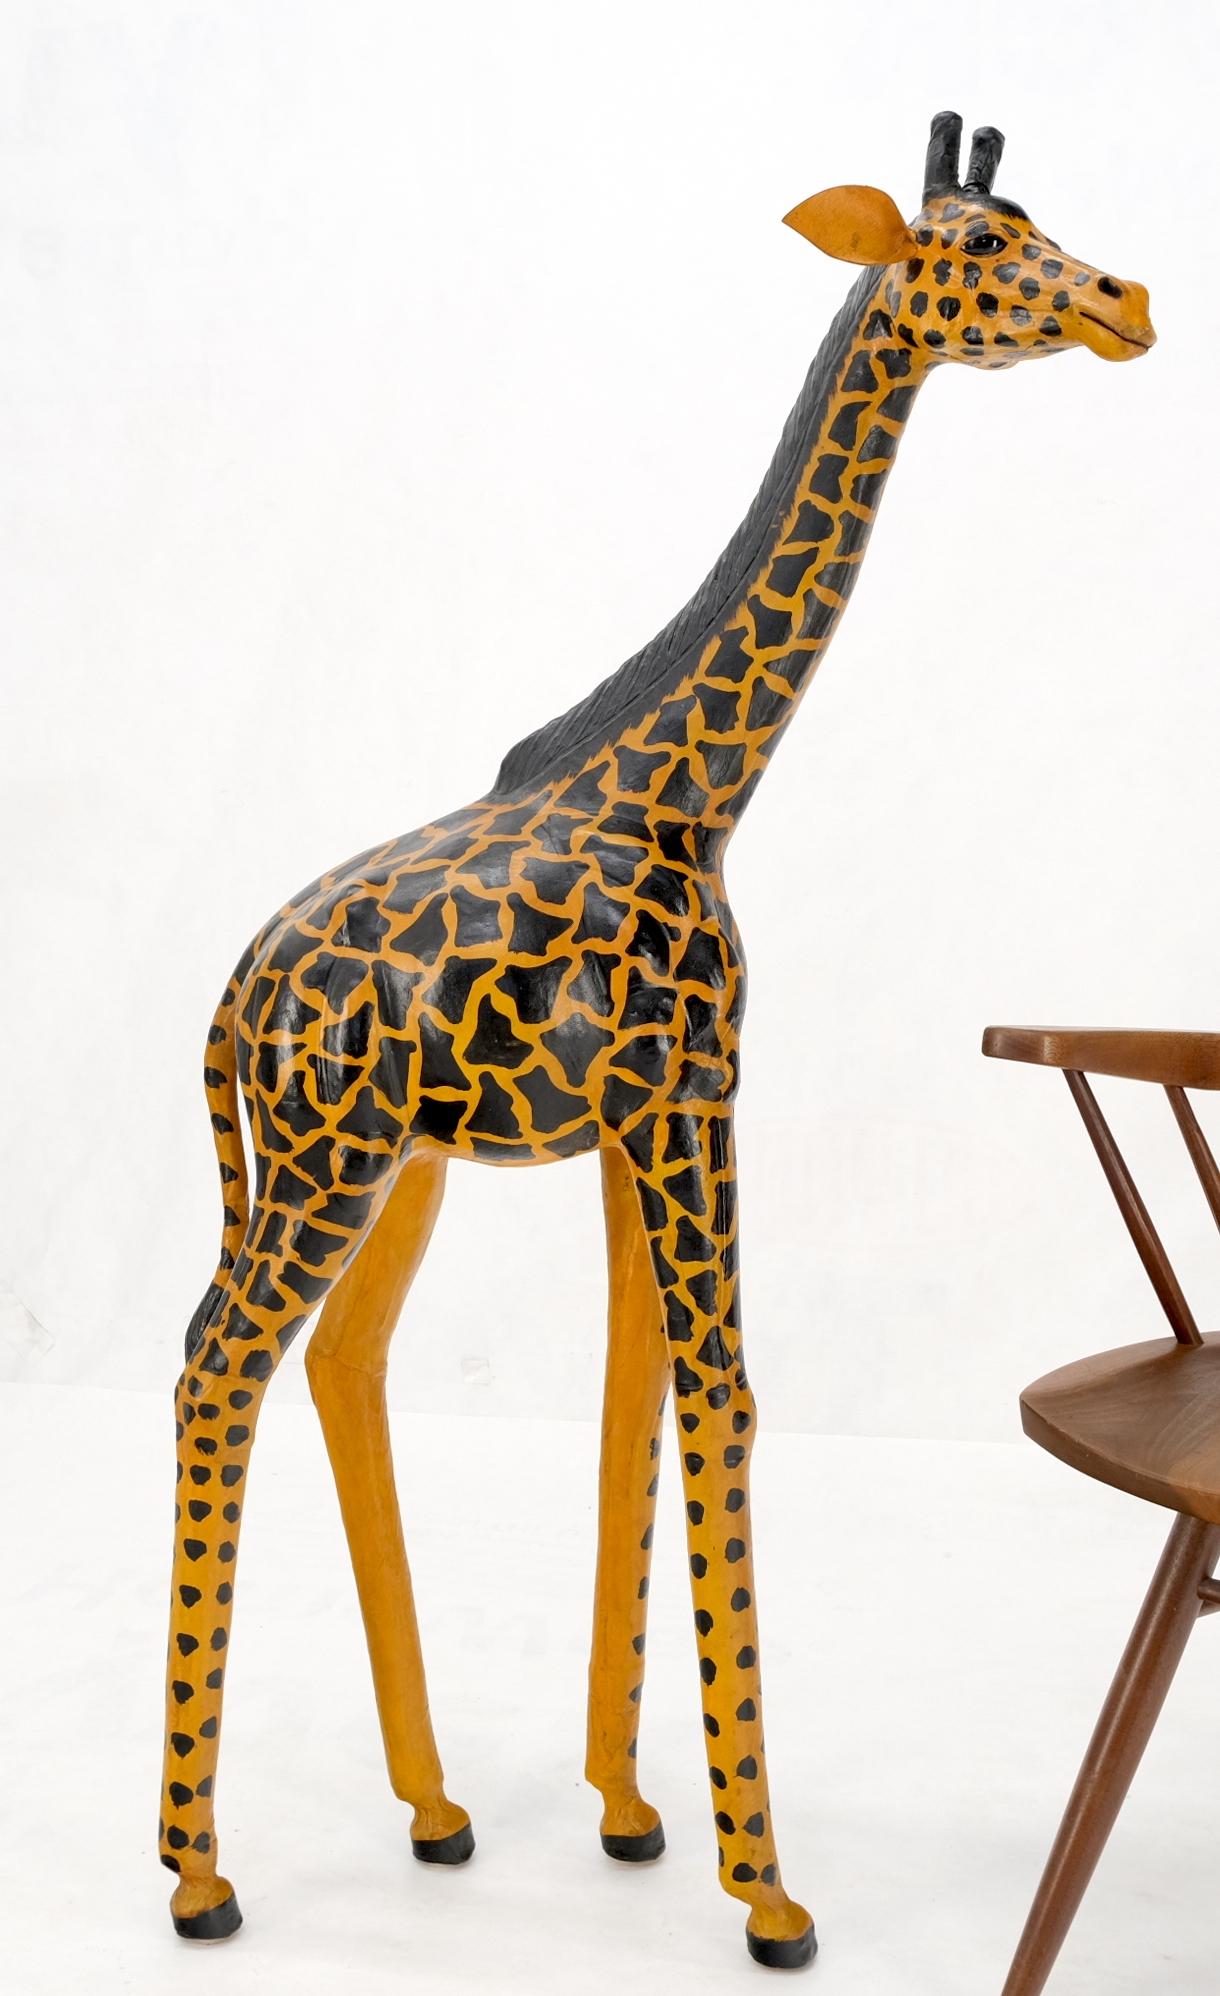 Abercrombie & Fitch Style Sculpture de girafe en cuir estampé.